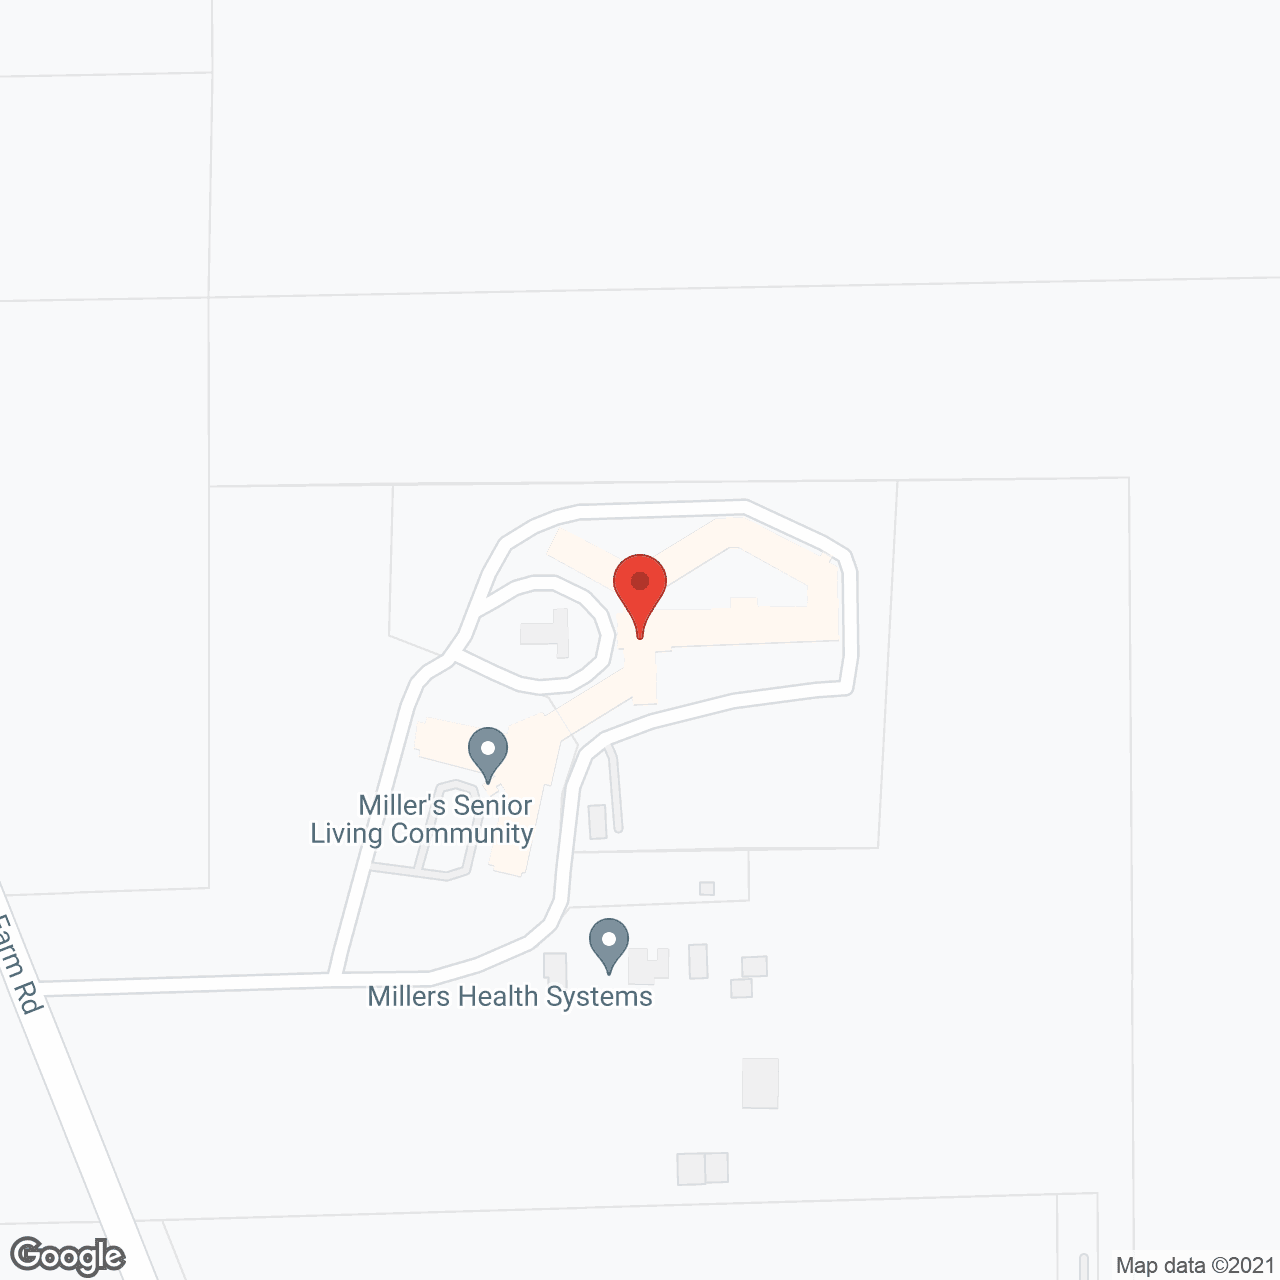 Miller's Senior Living Community in google map